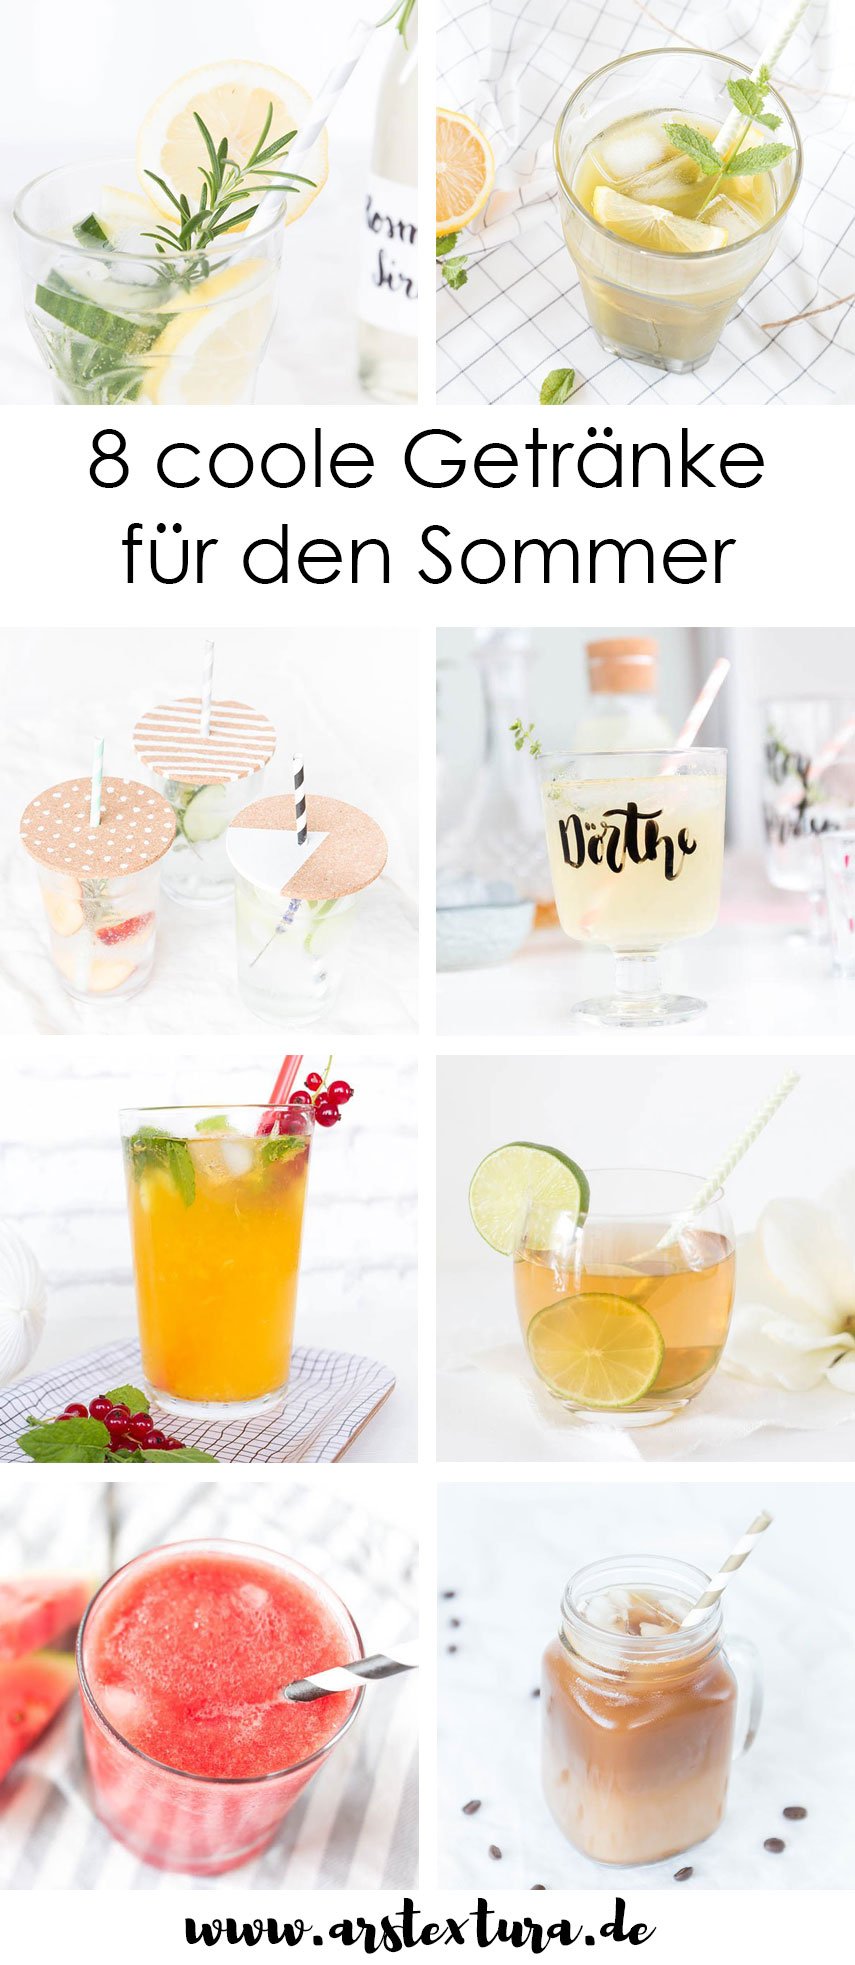 8 coole Getränke für den Sommer: Limonade selber machen, Eistee, Cold Crew Coffee und andere coole Sommerdrinks | ars textura